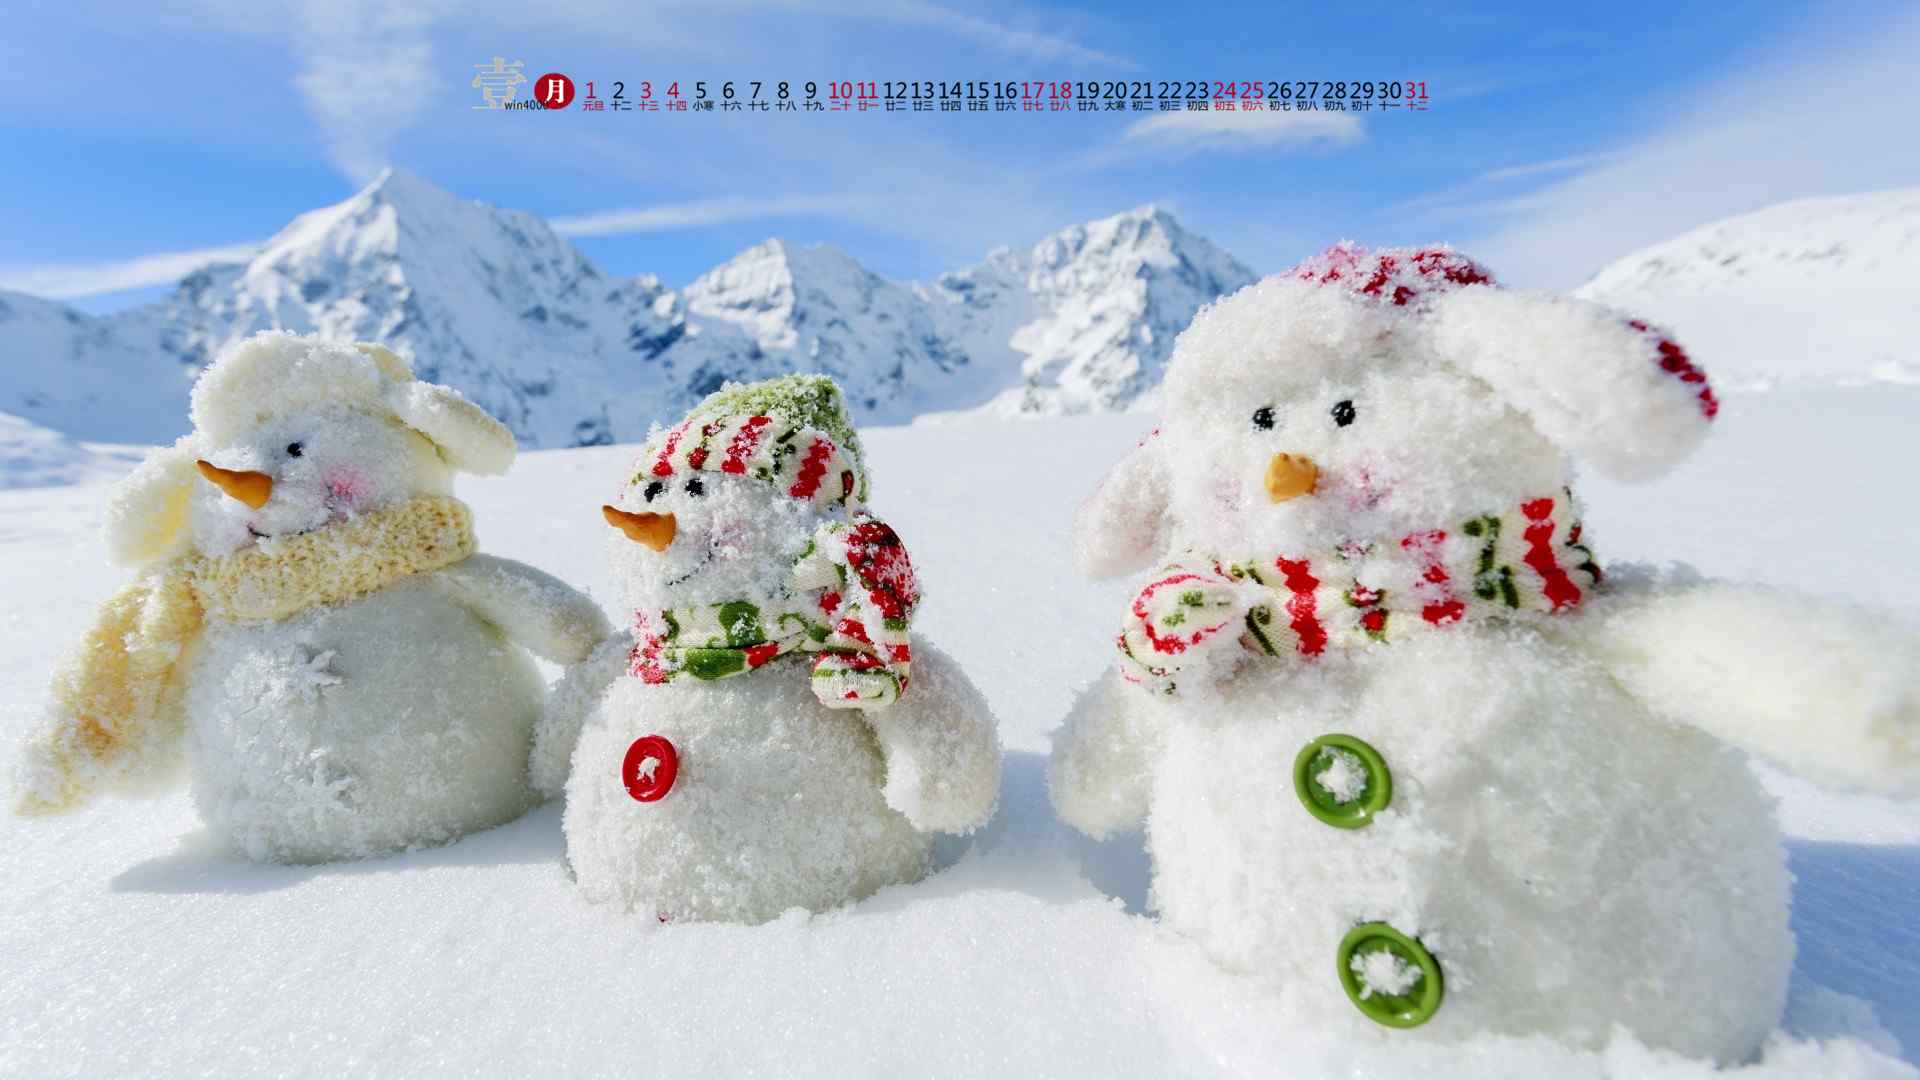 2017年1月日历可爱小雪人图片壁纸